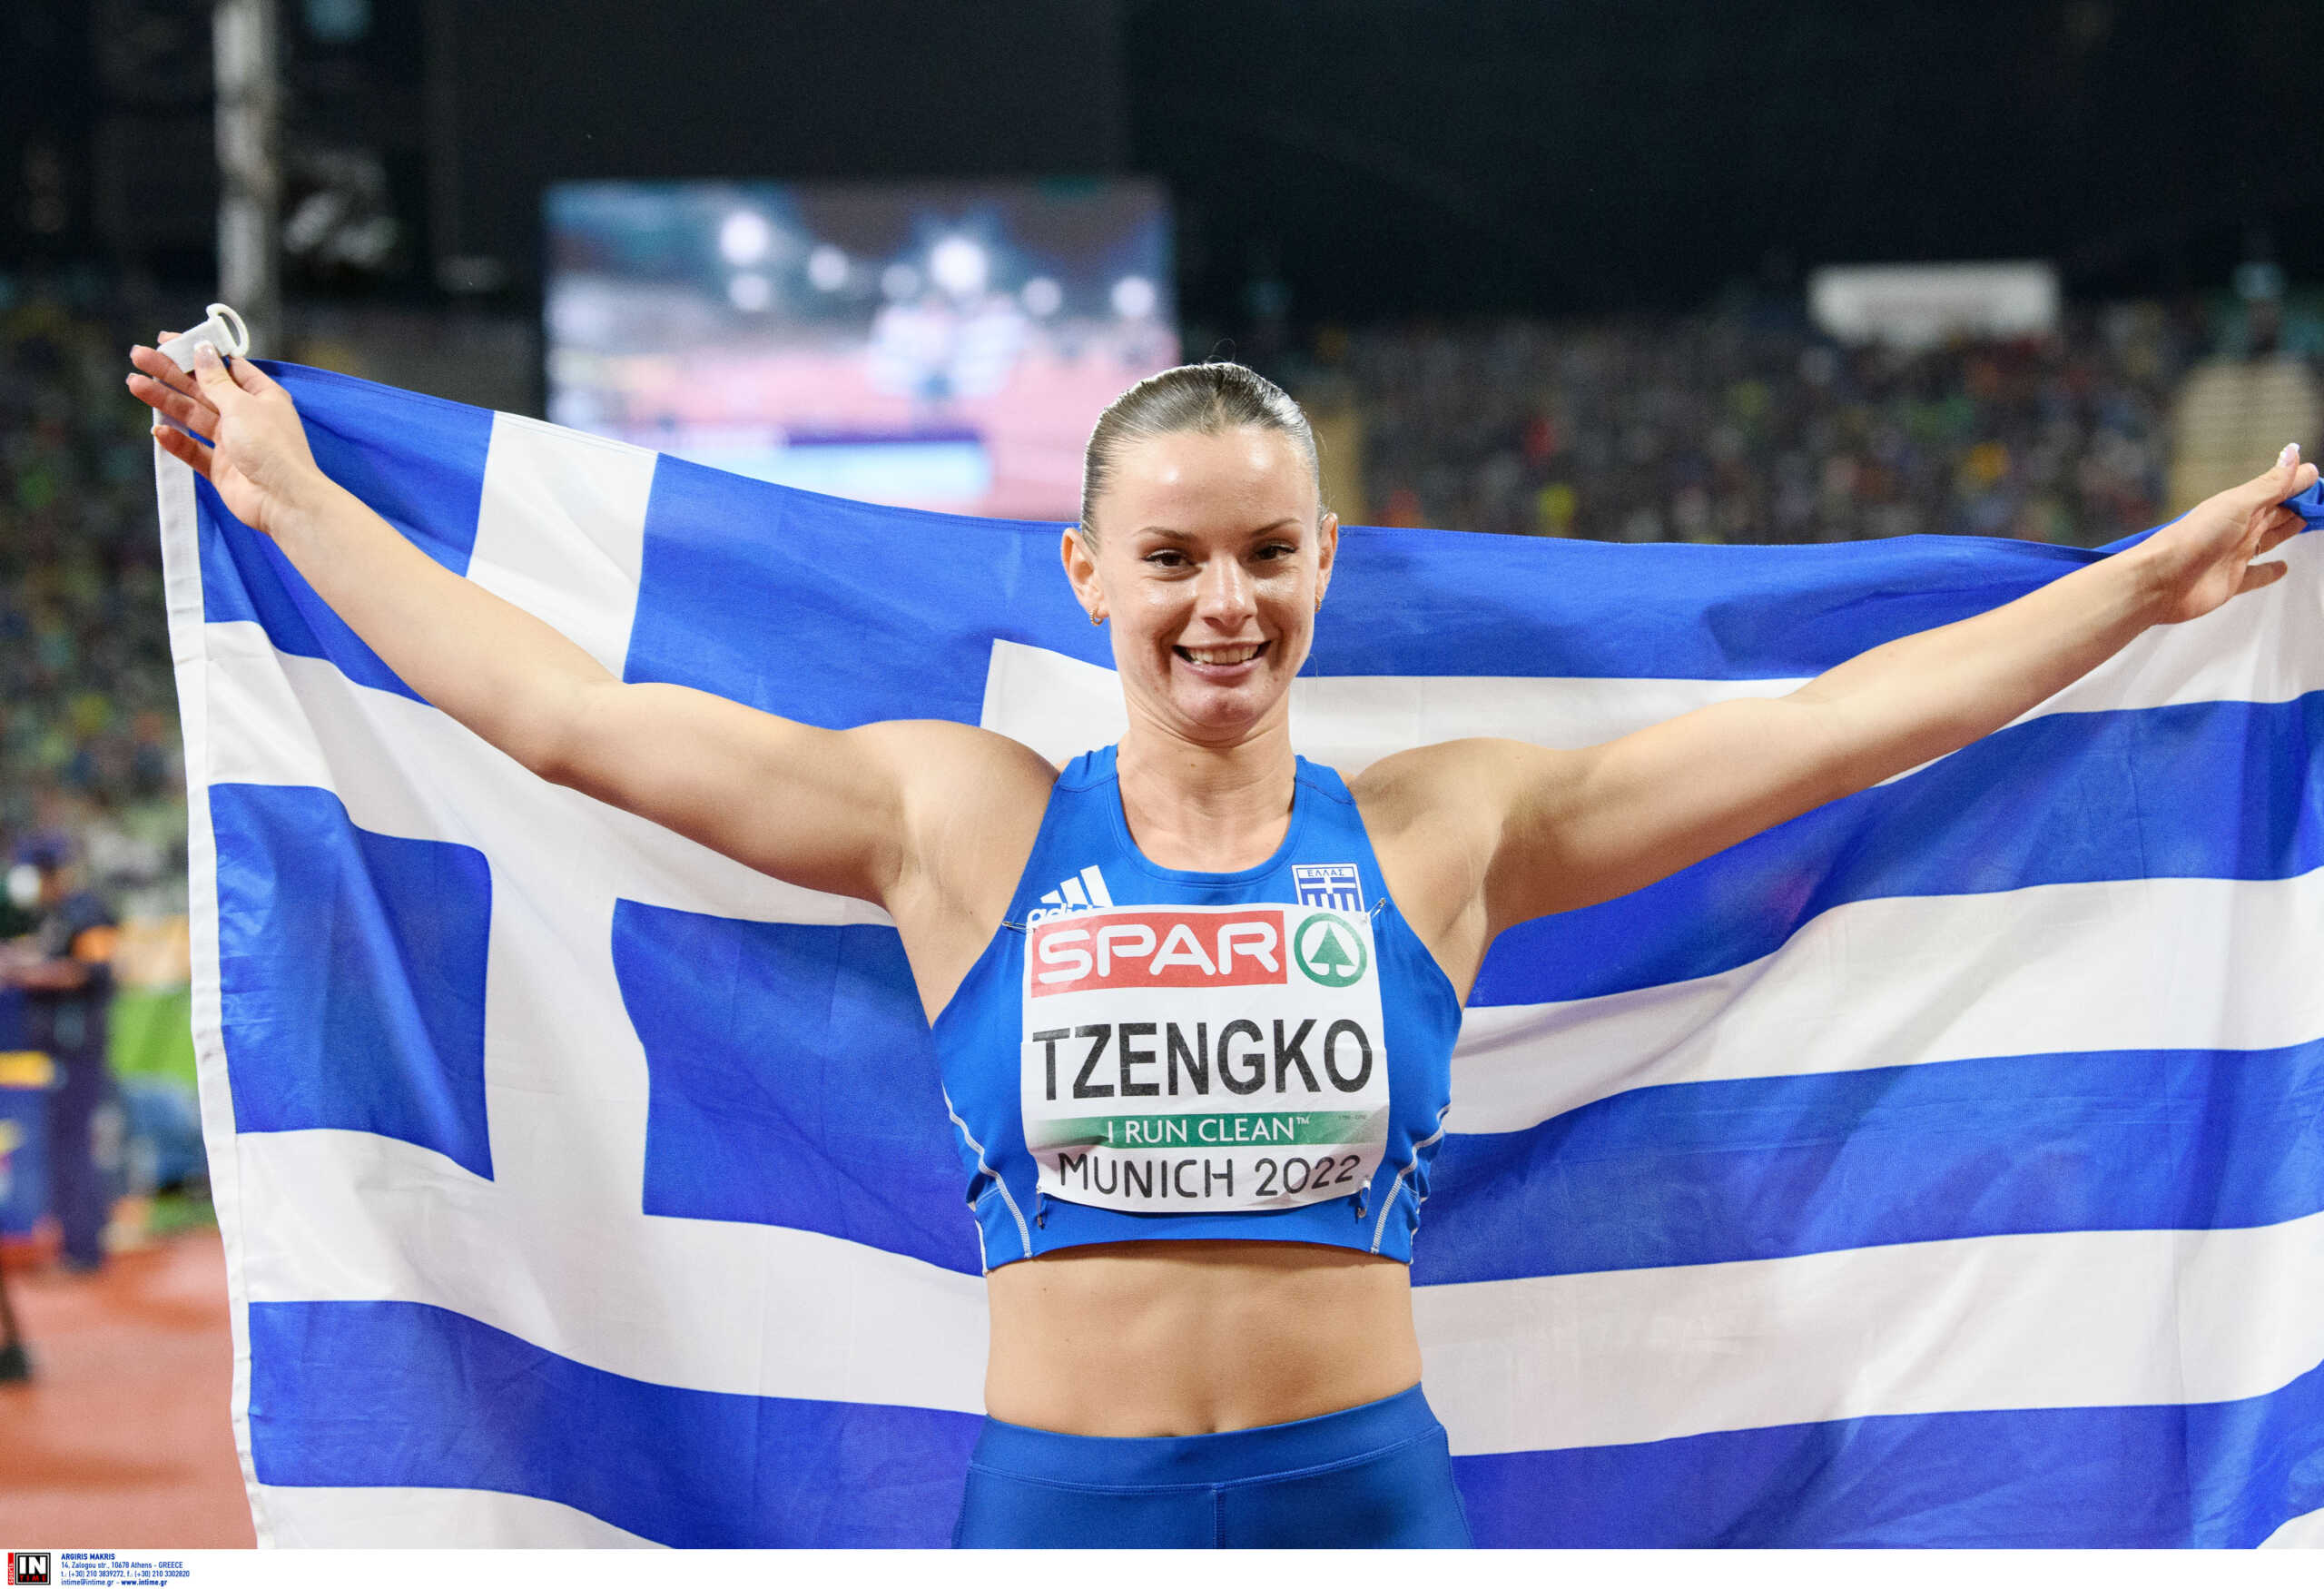 Η Ελίνα Τζένγκο σημαιοφόρος στους ευρωπαϊκούς αγώνες